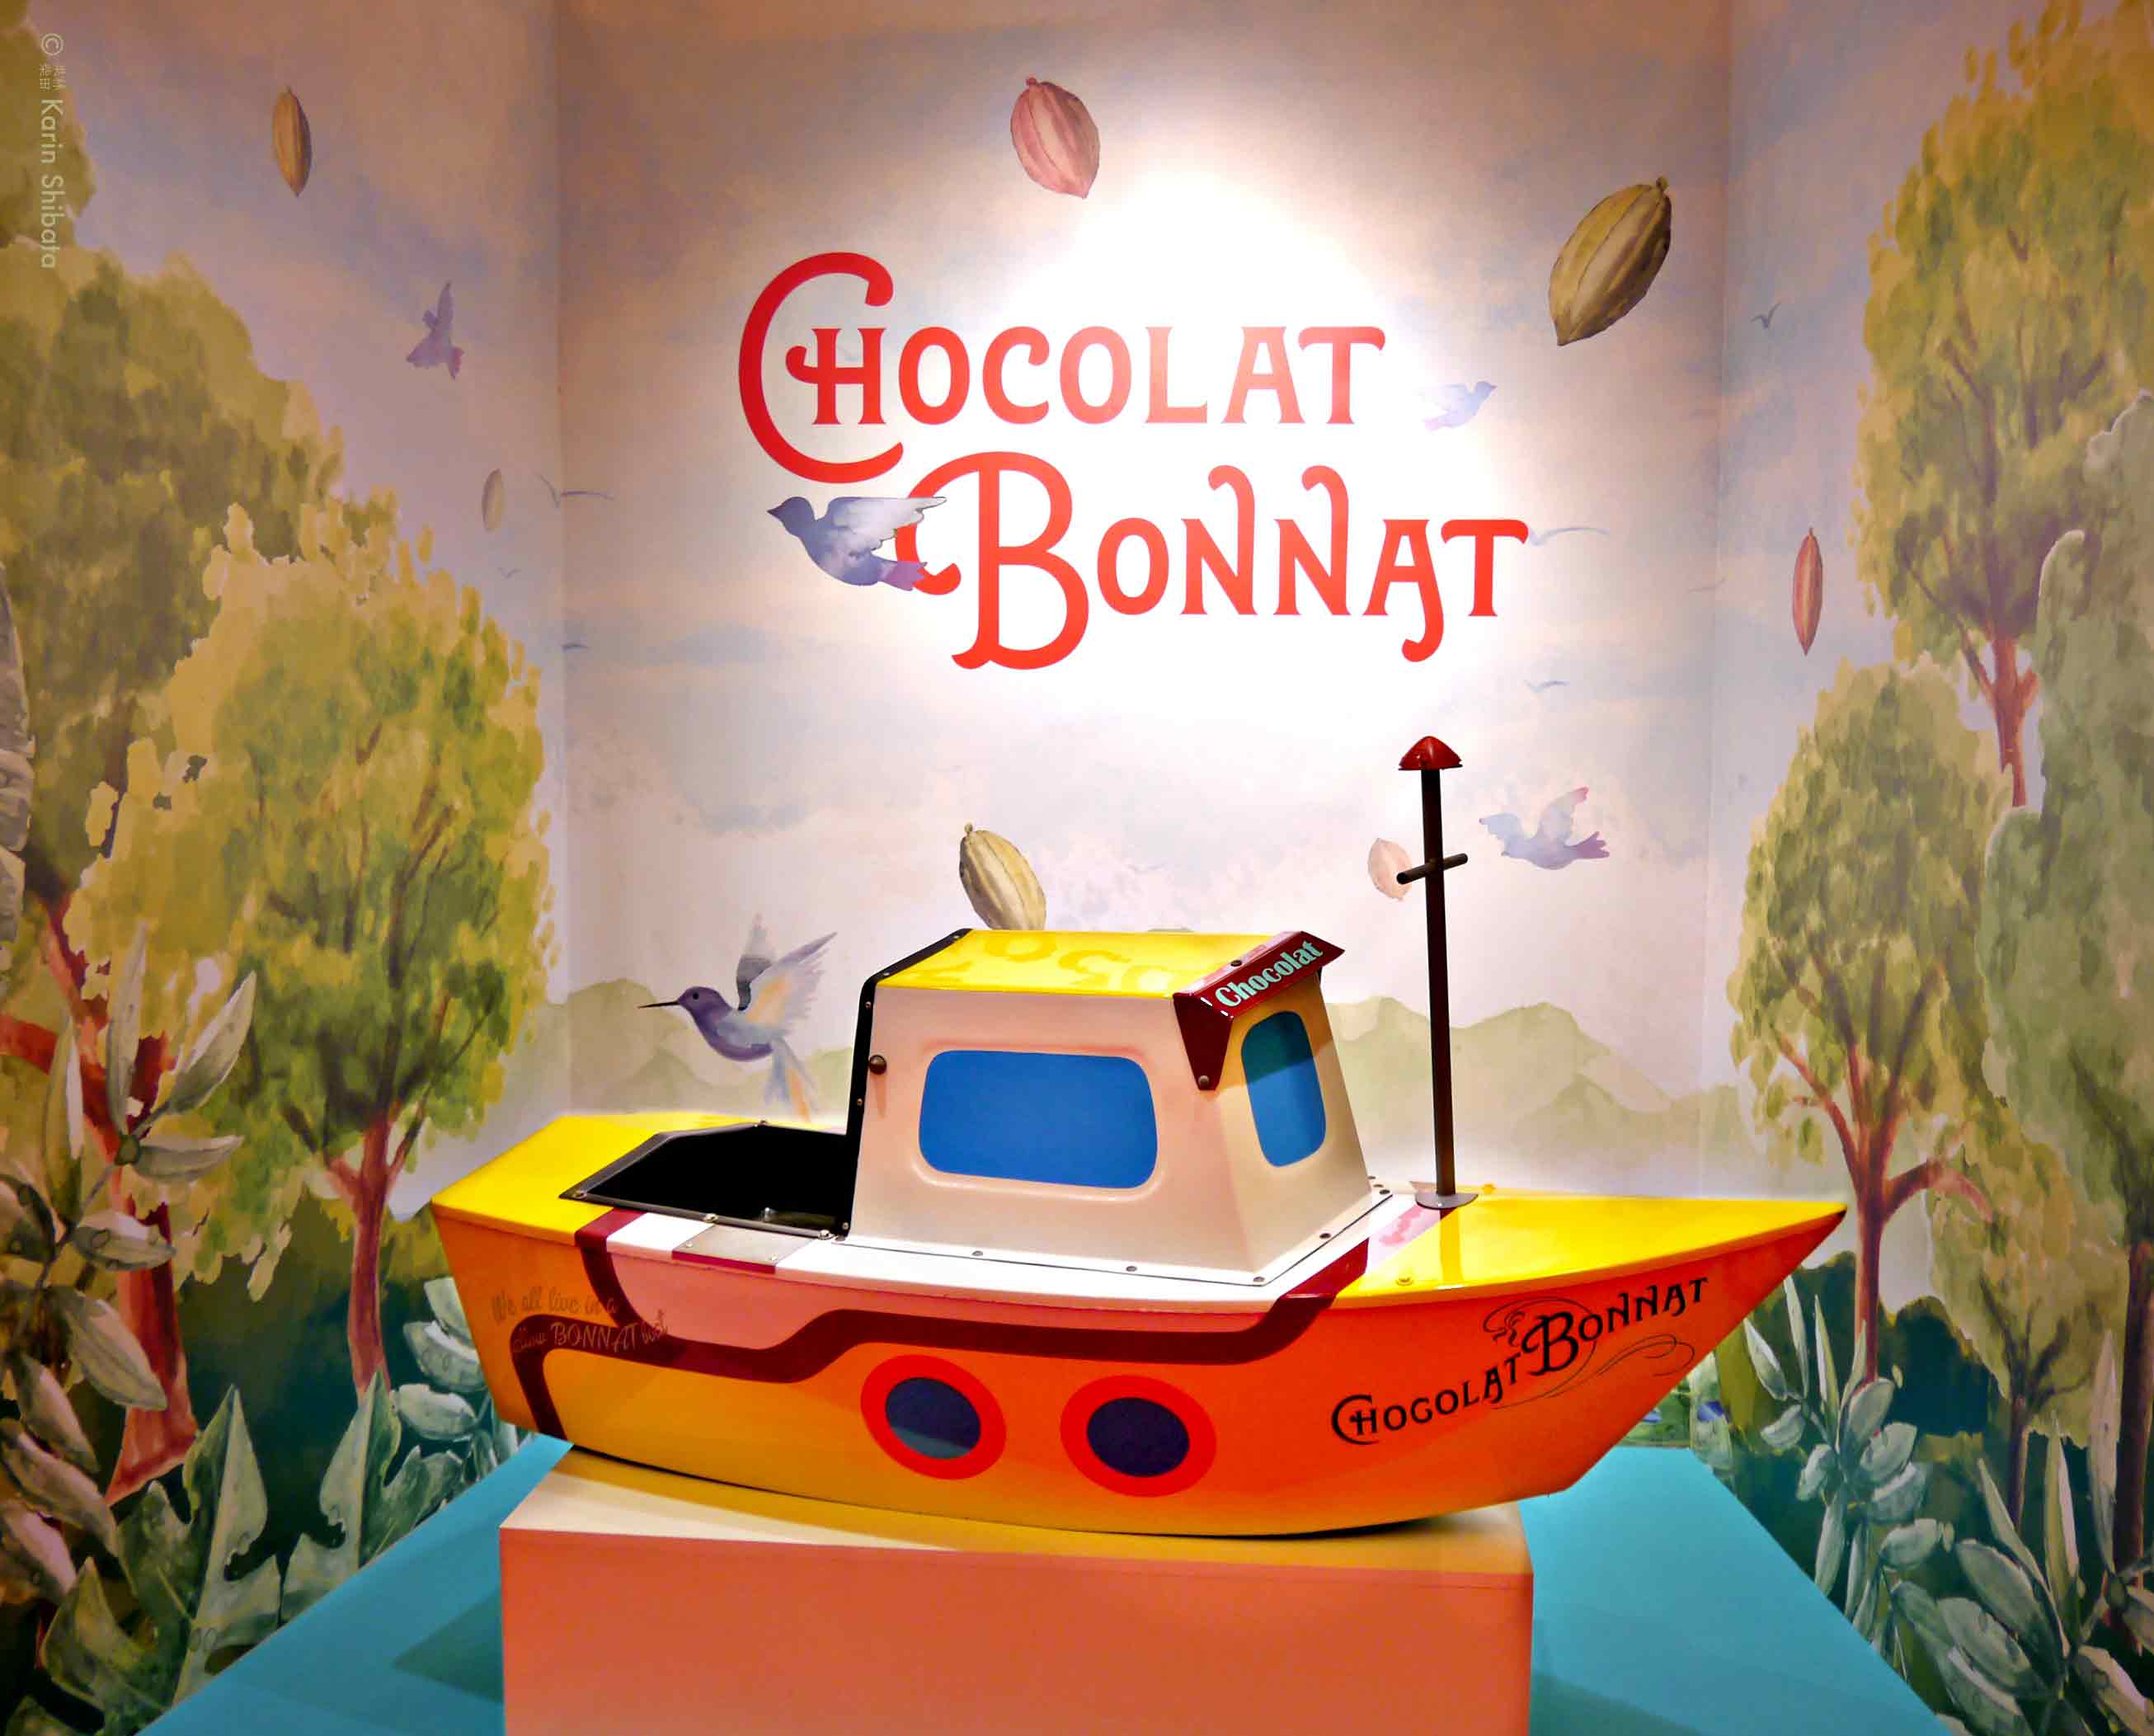 salon du chocolat paris 2017 bonnat